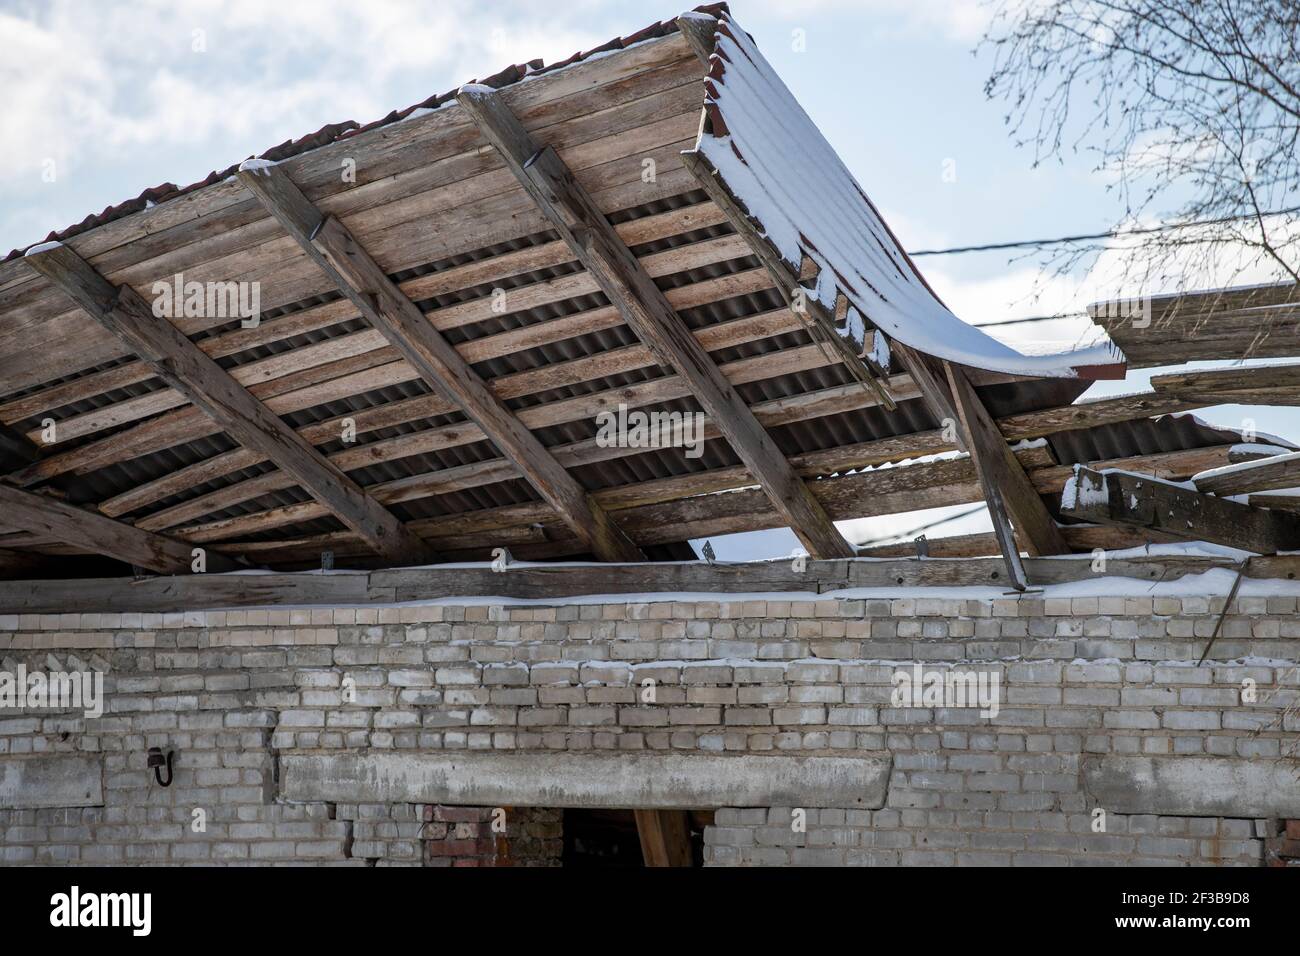 il tetto della casa crollò sotto il peso della neve. Foto di alta qualità Foto Stock